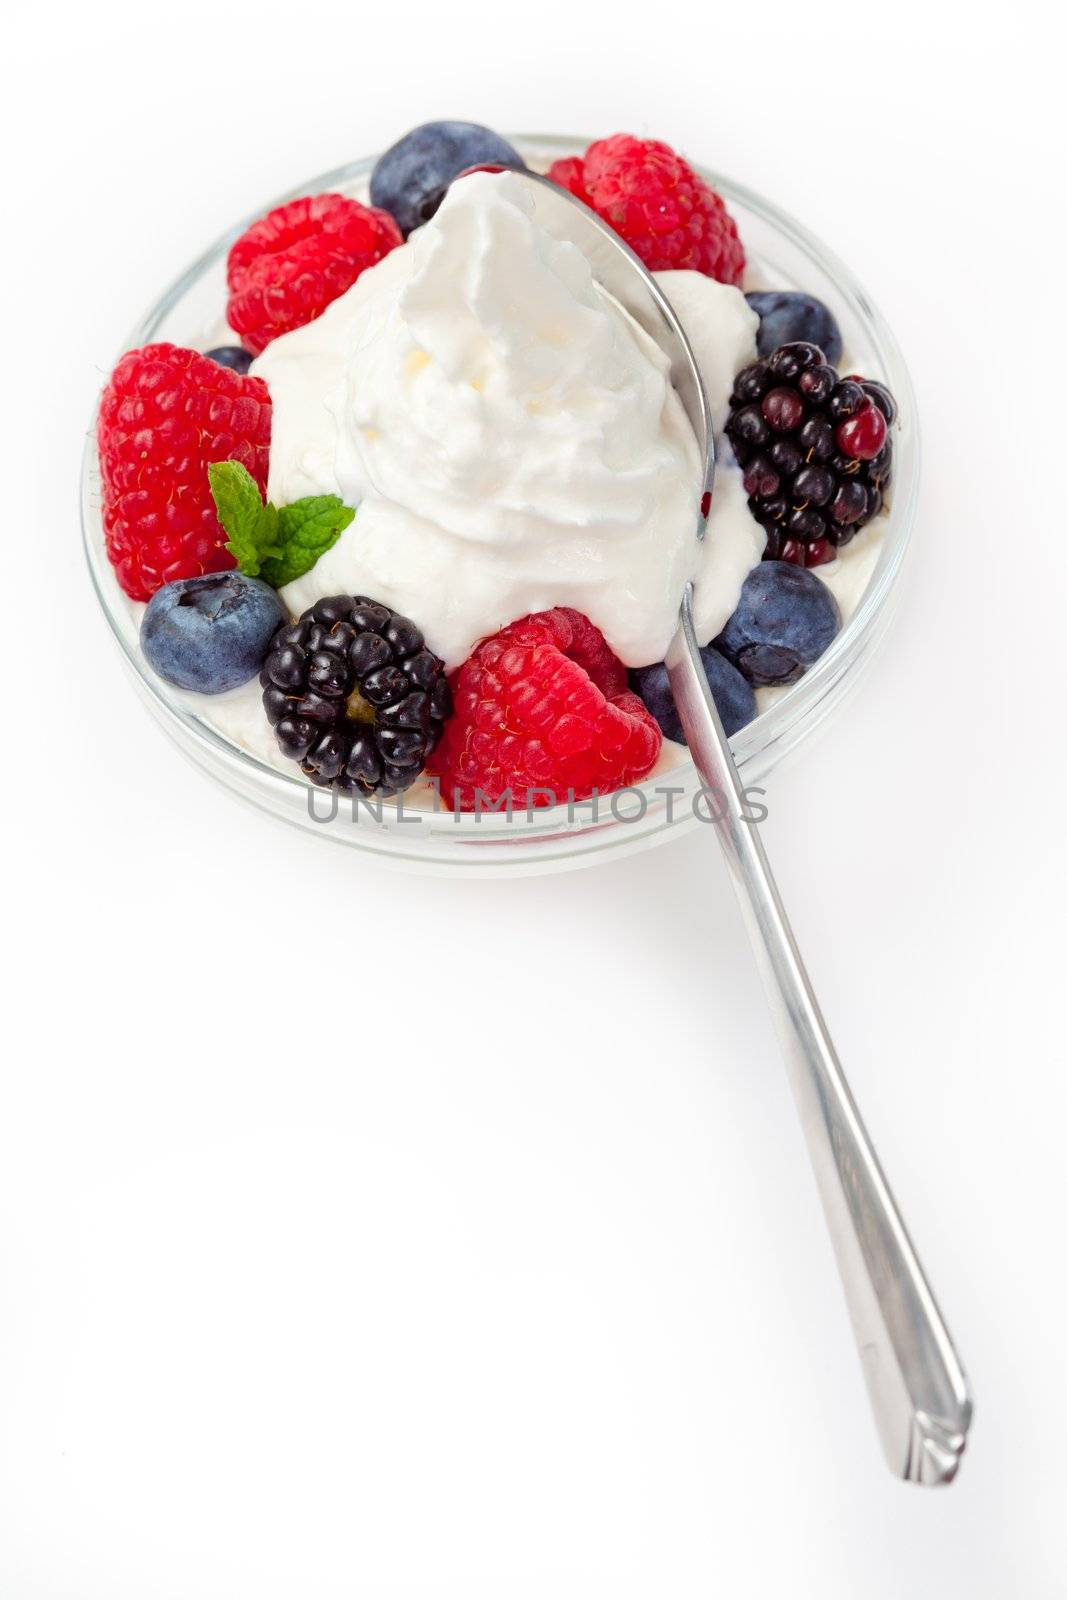 Dessert of berries by Wavebreakmedia